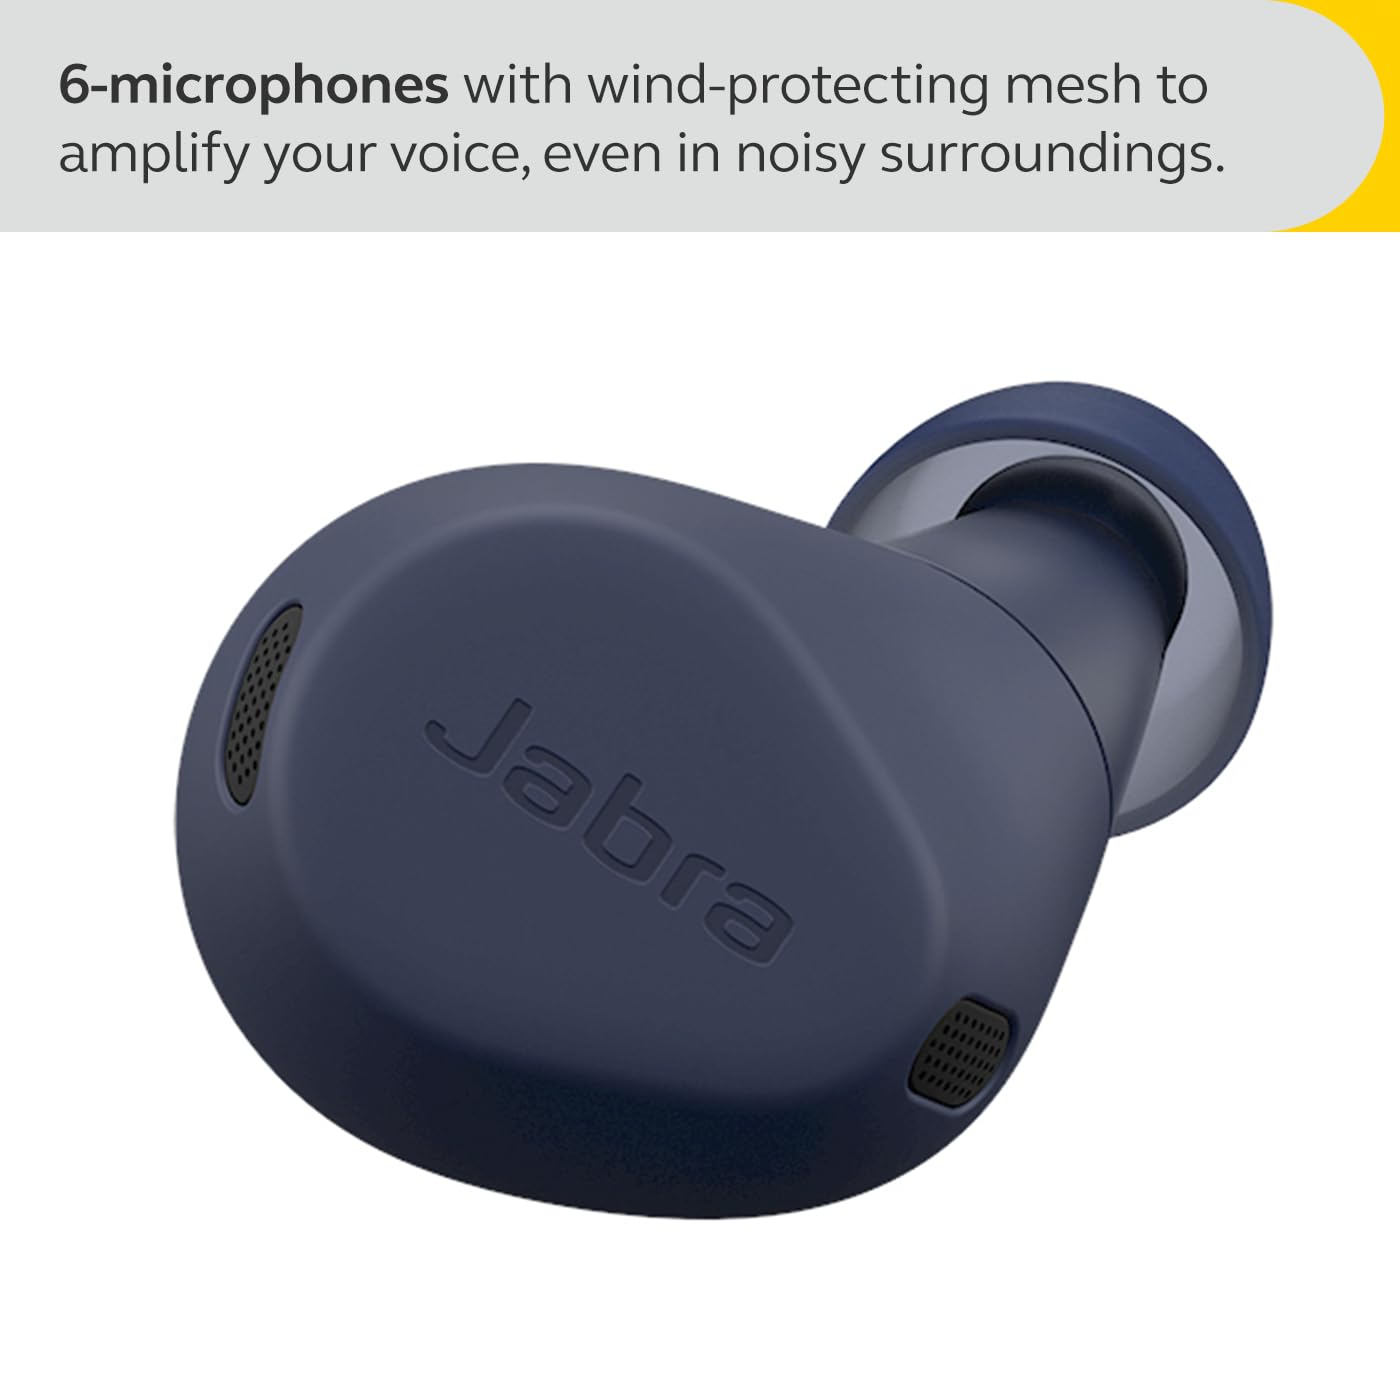 Jabra Announces Its New World's Toughest Earbuds - Elite 8 Active